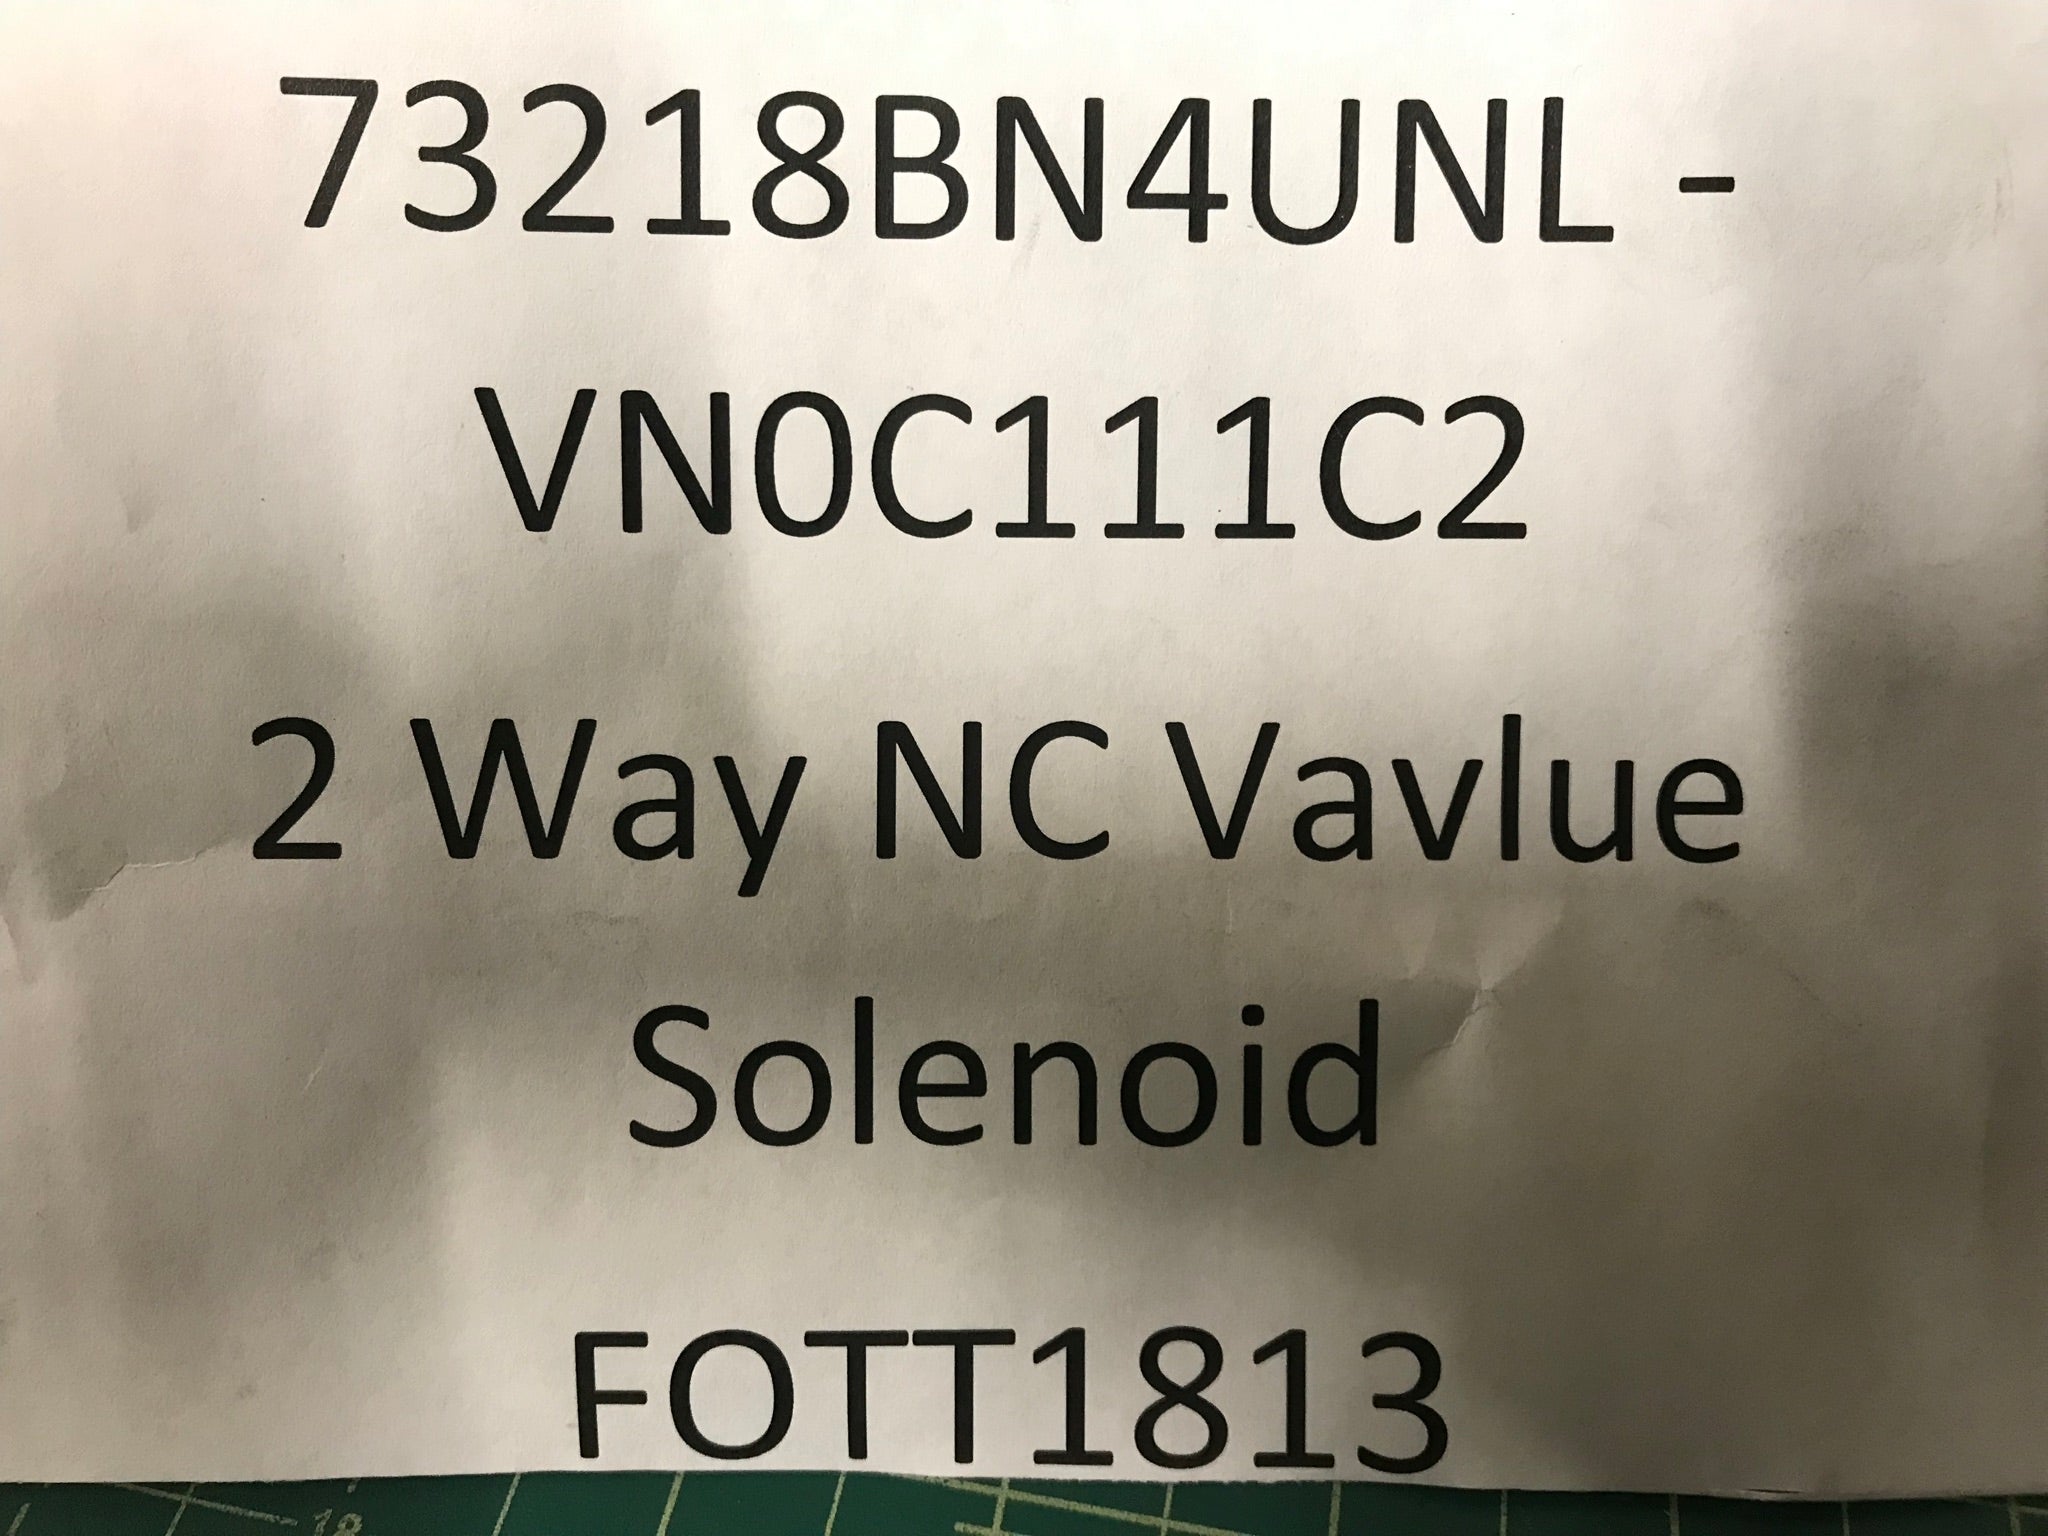 2 Way NC Valve Solenoid